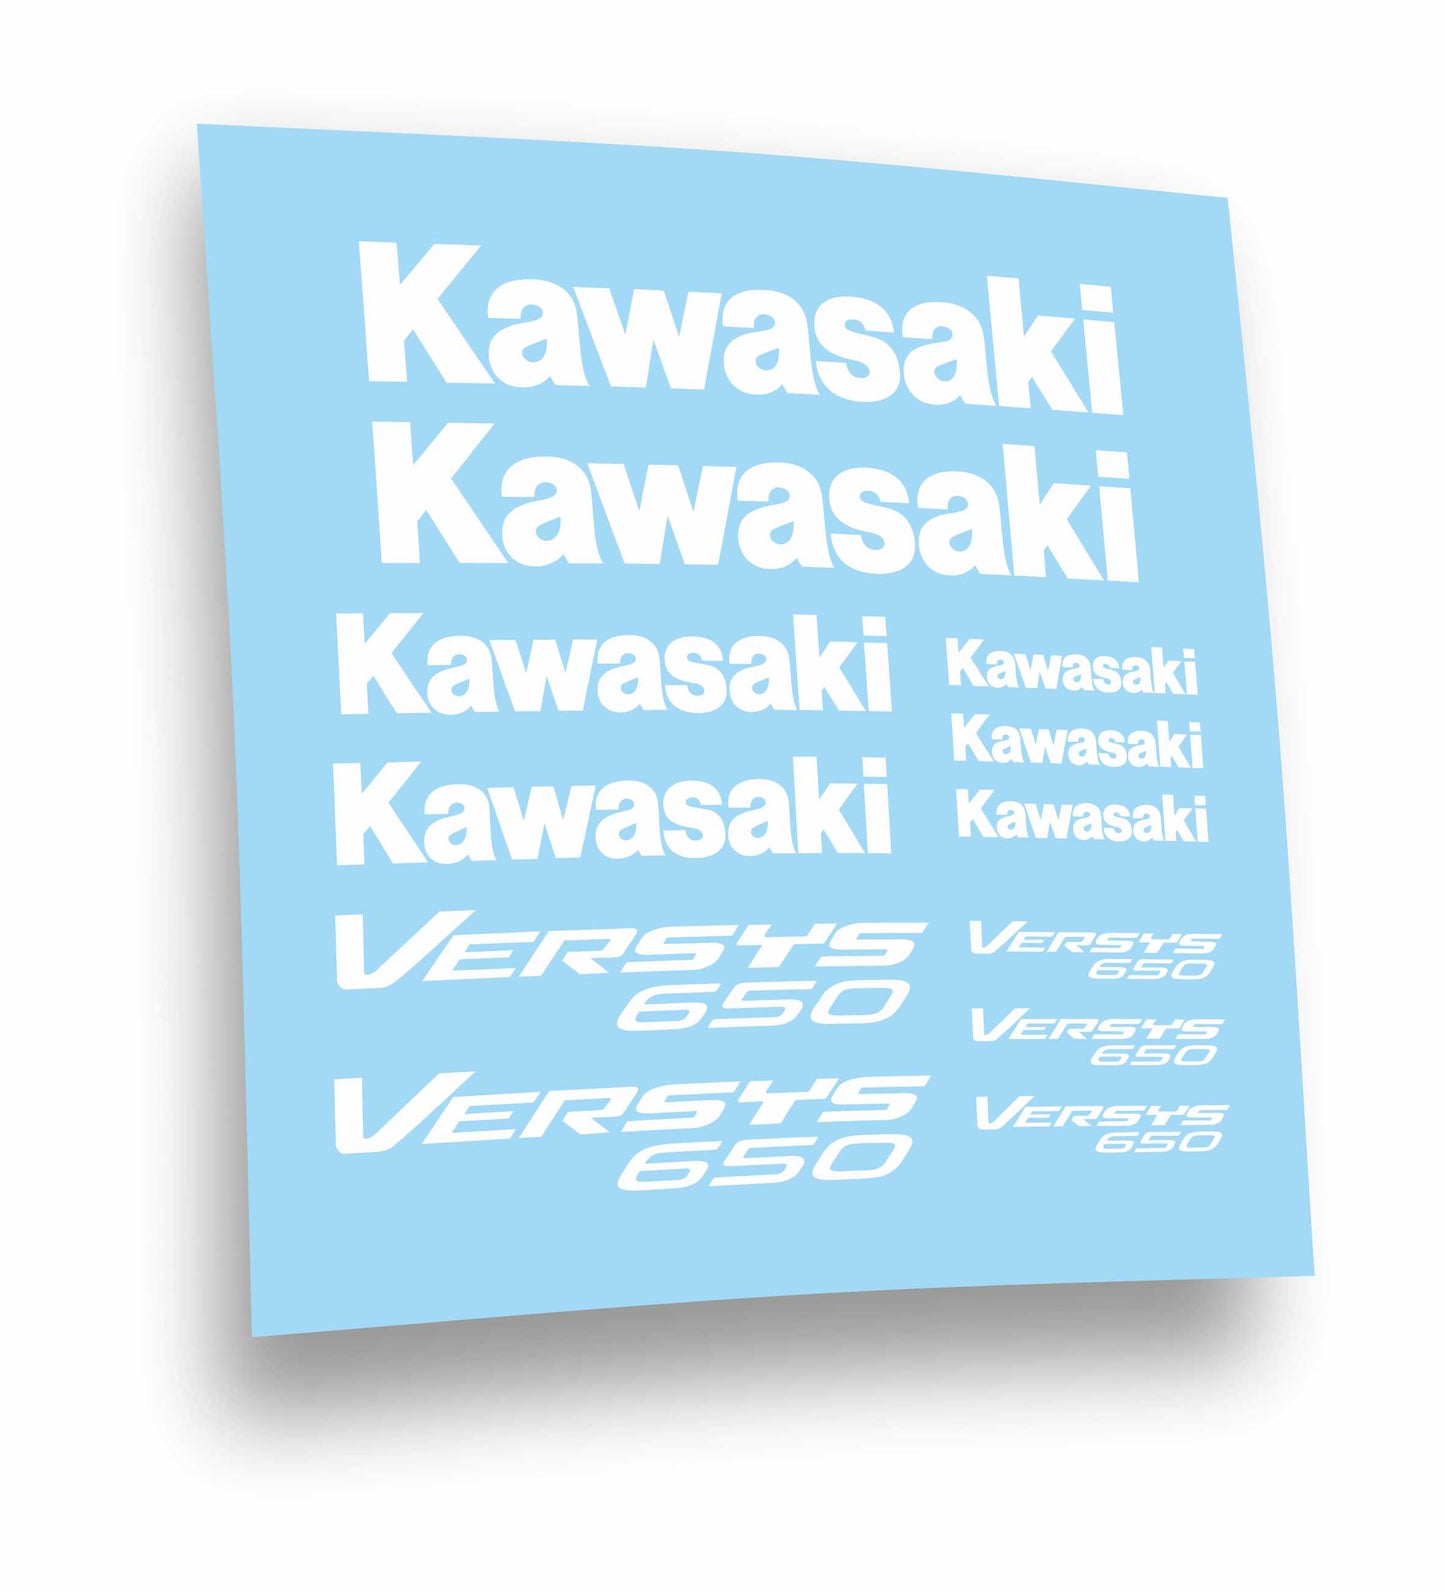 adesivi stickers  Kawasaki Versis 650